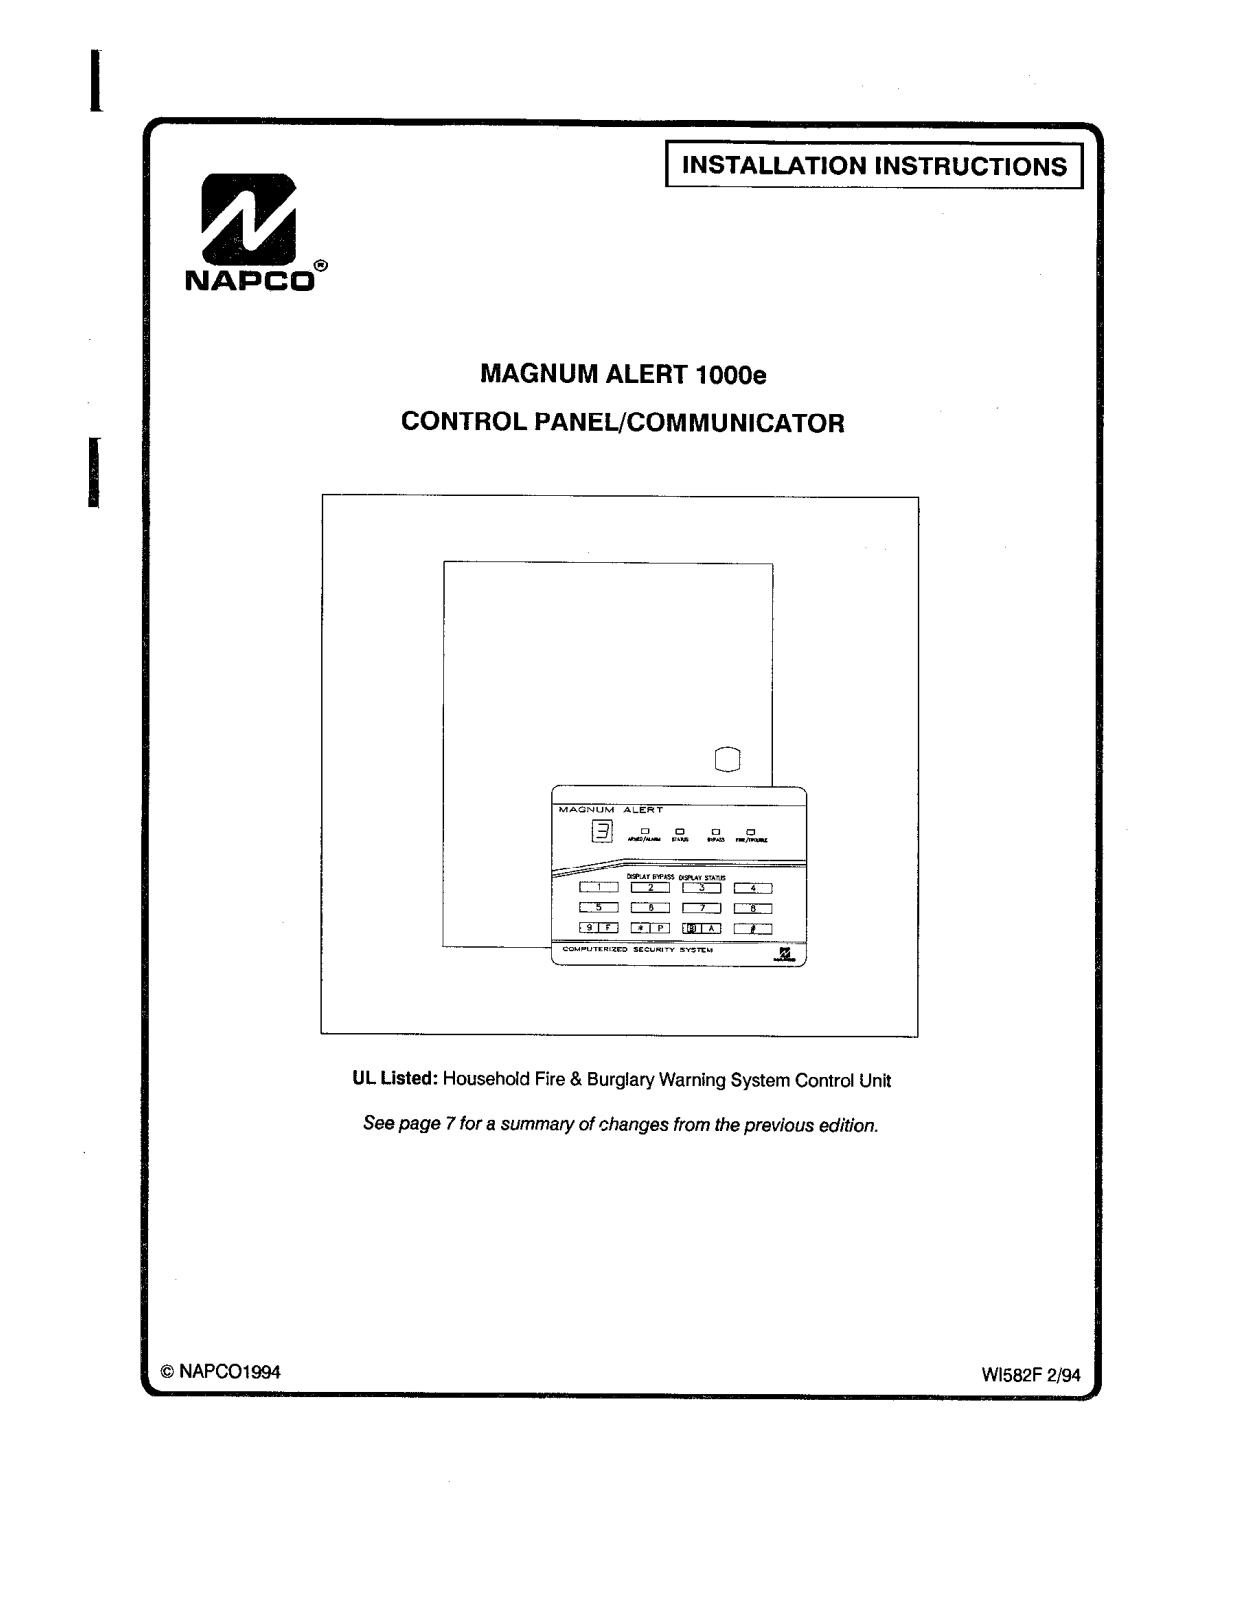 NAPCO MA1000E Installation Manual